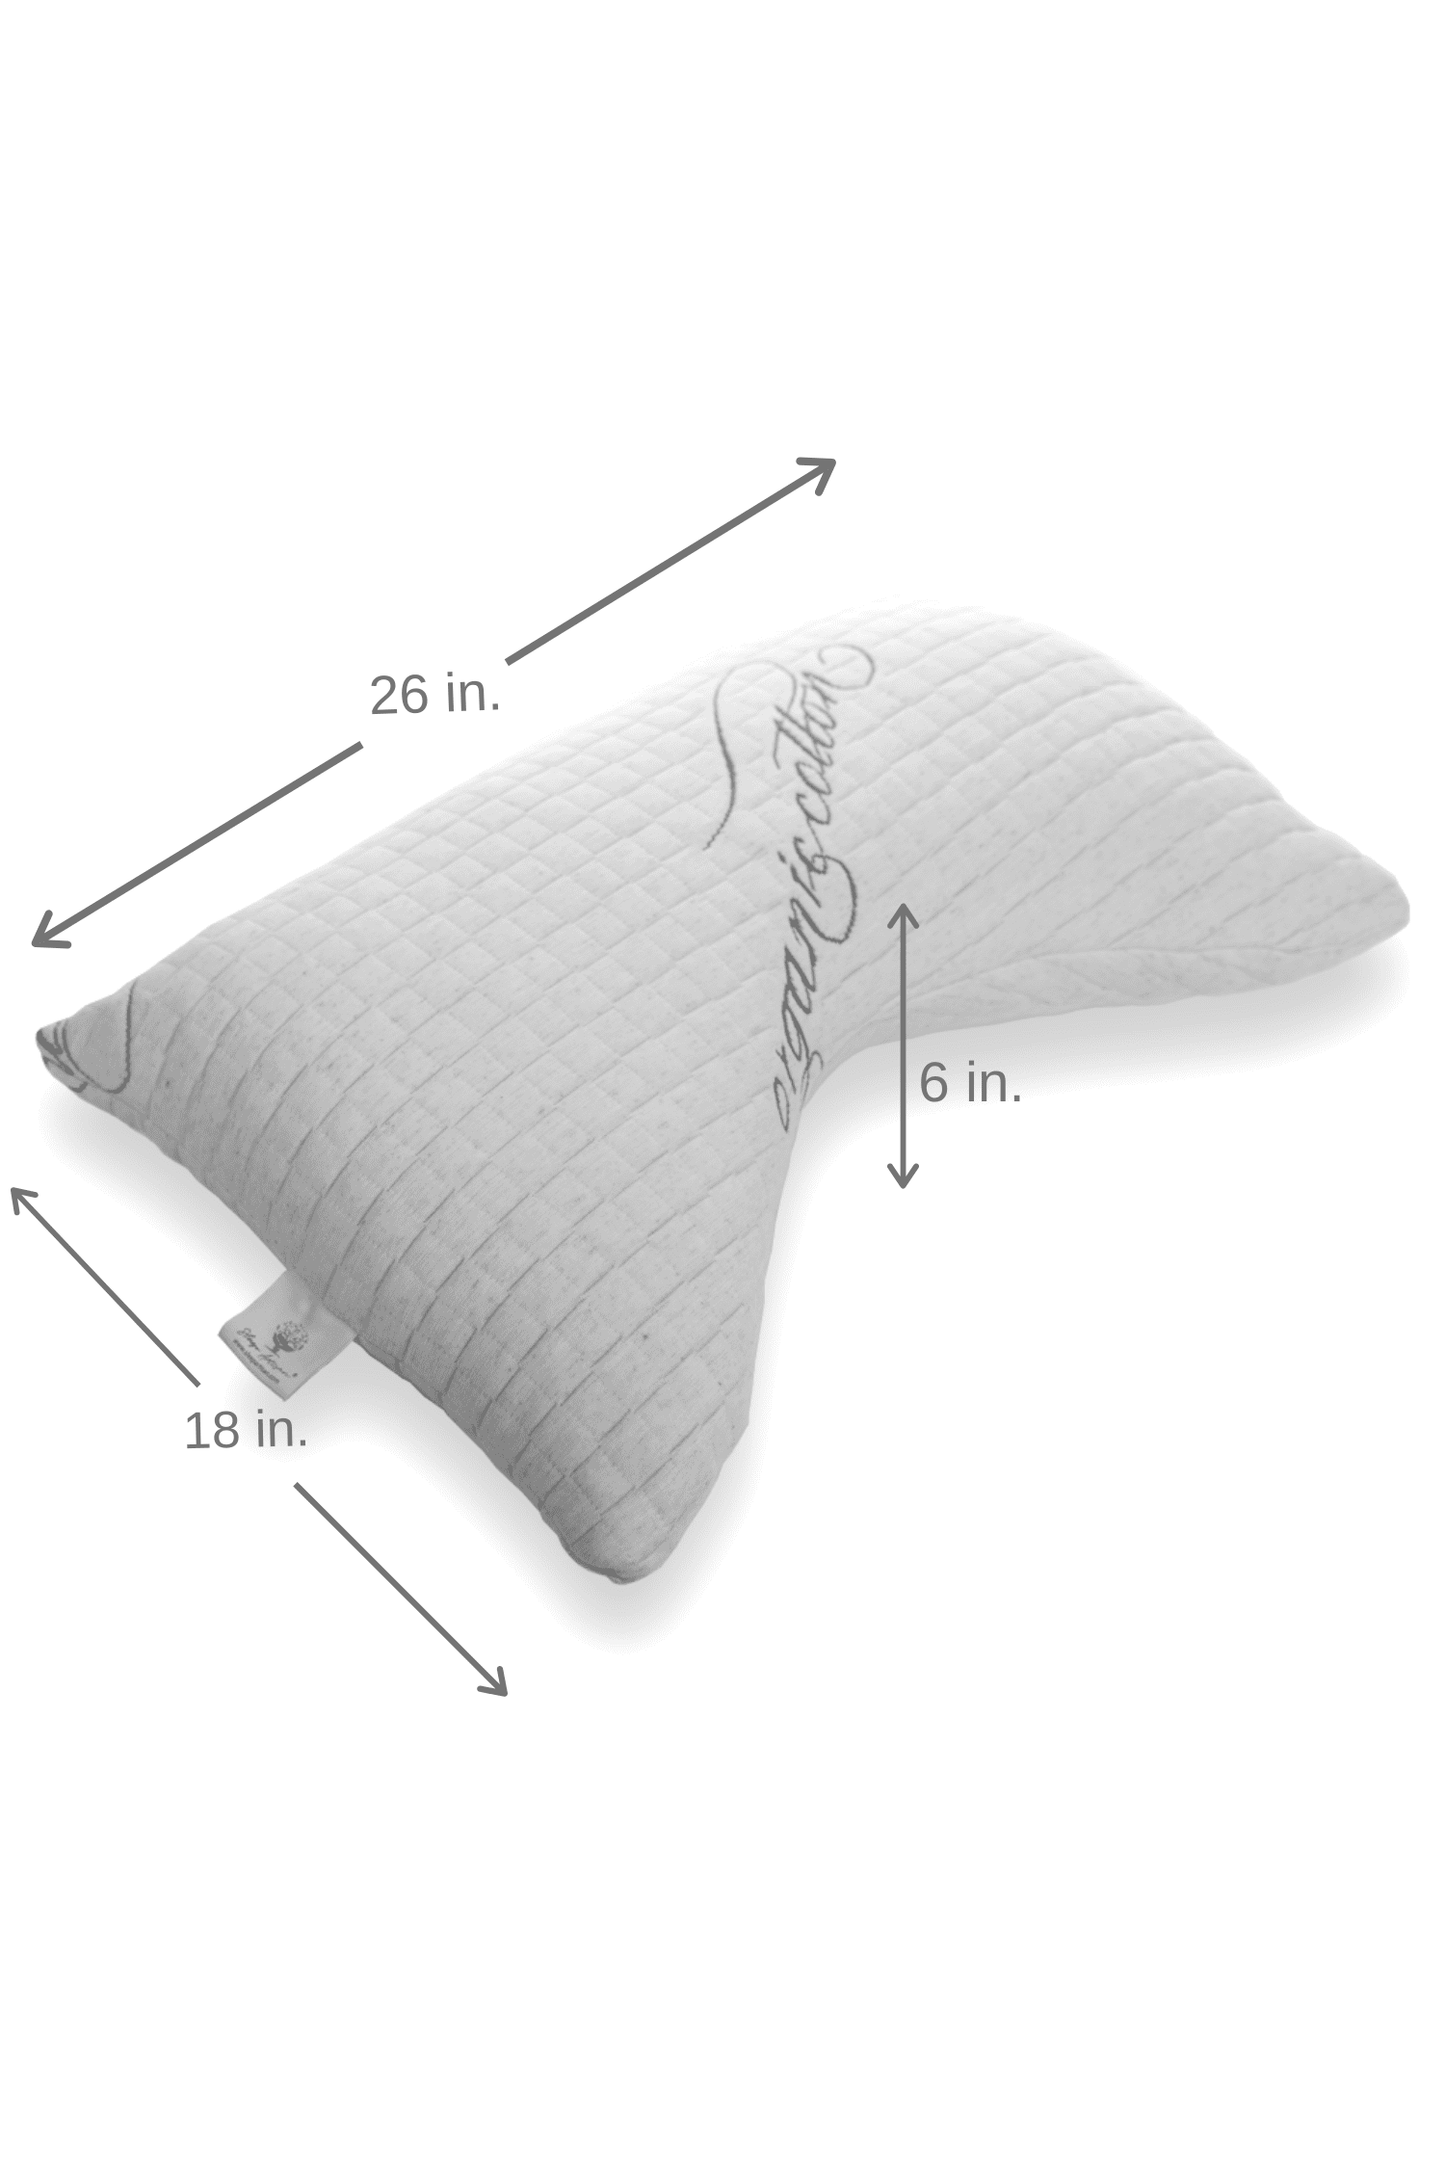 Luxury Side Sleeper Pillow - Standard